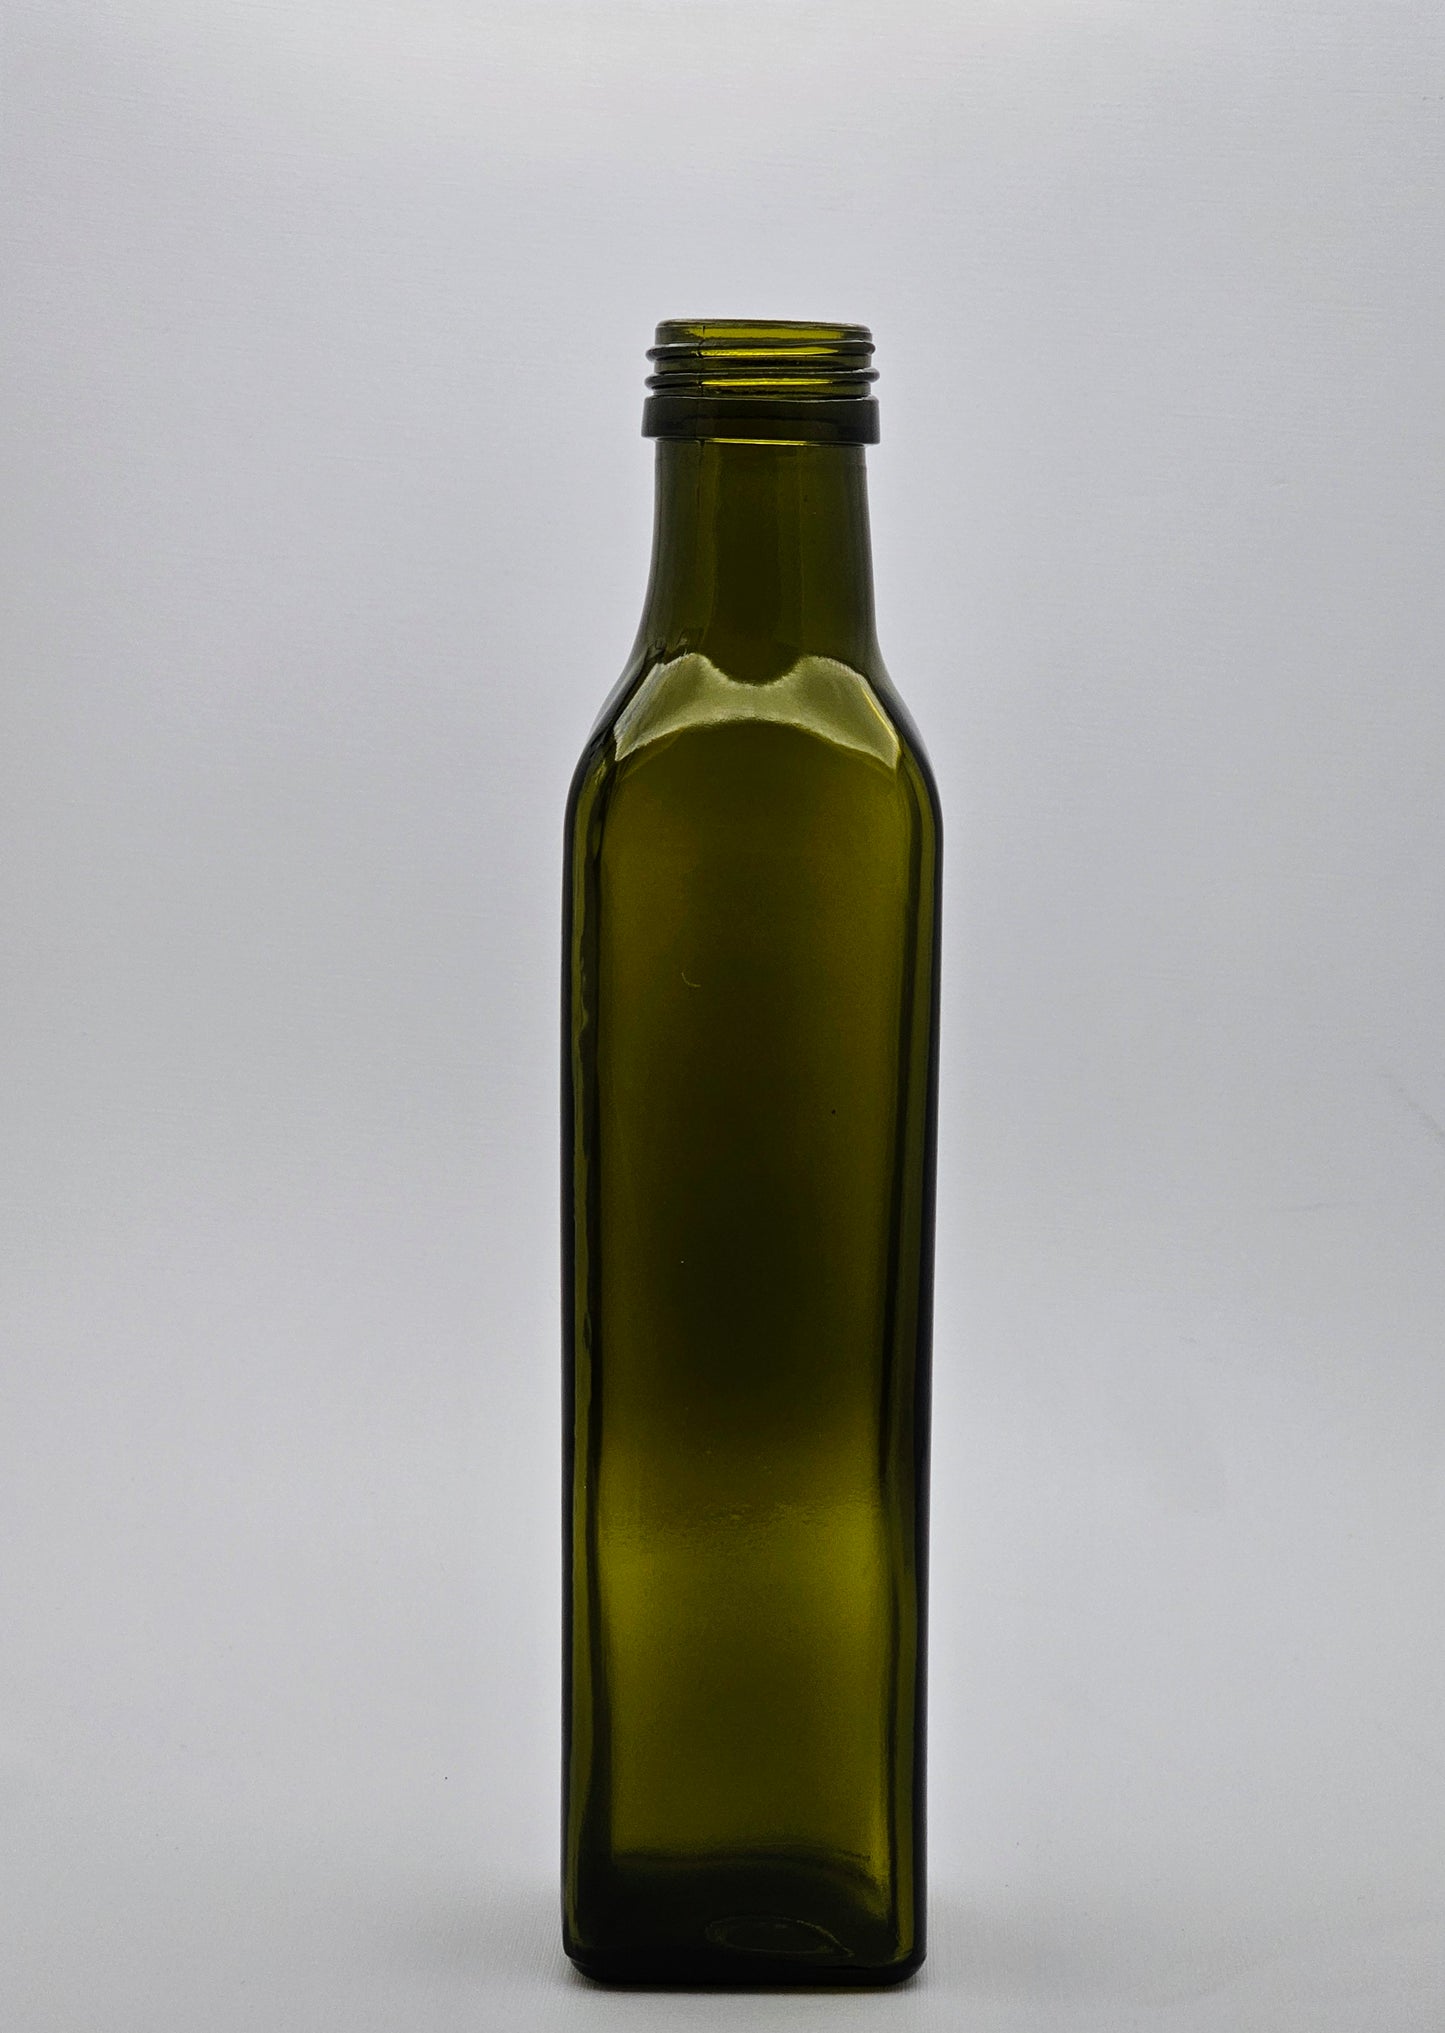 250ml Antique Green Marasca Glass Bottle - 60 Bottles and Olea Pourer Caps Per Carton Unit Cost - $1.45c each (Bottle/Capcombo)